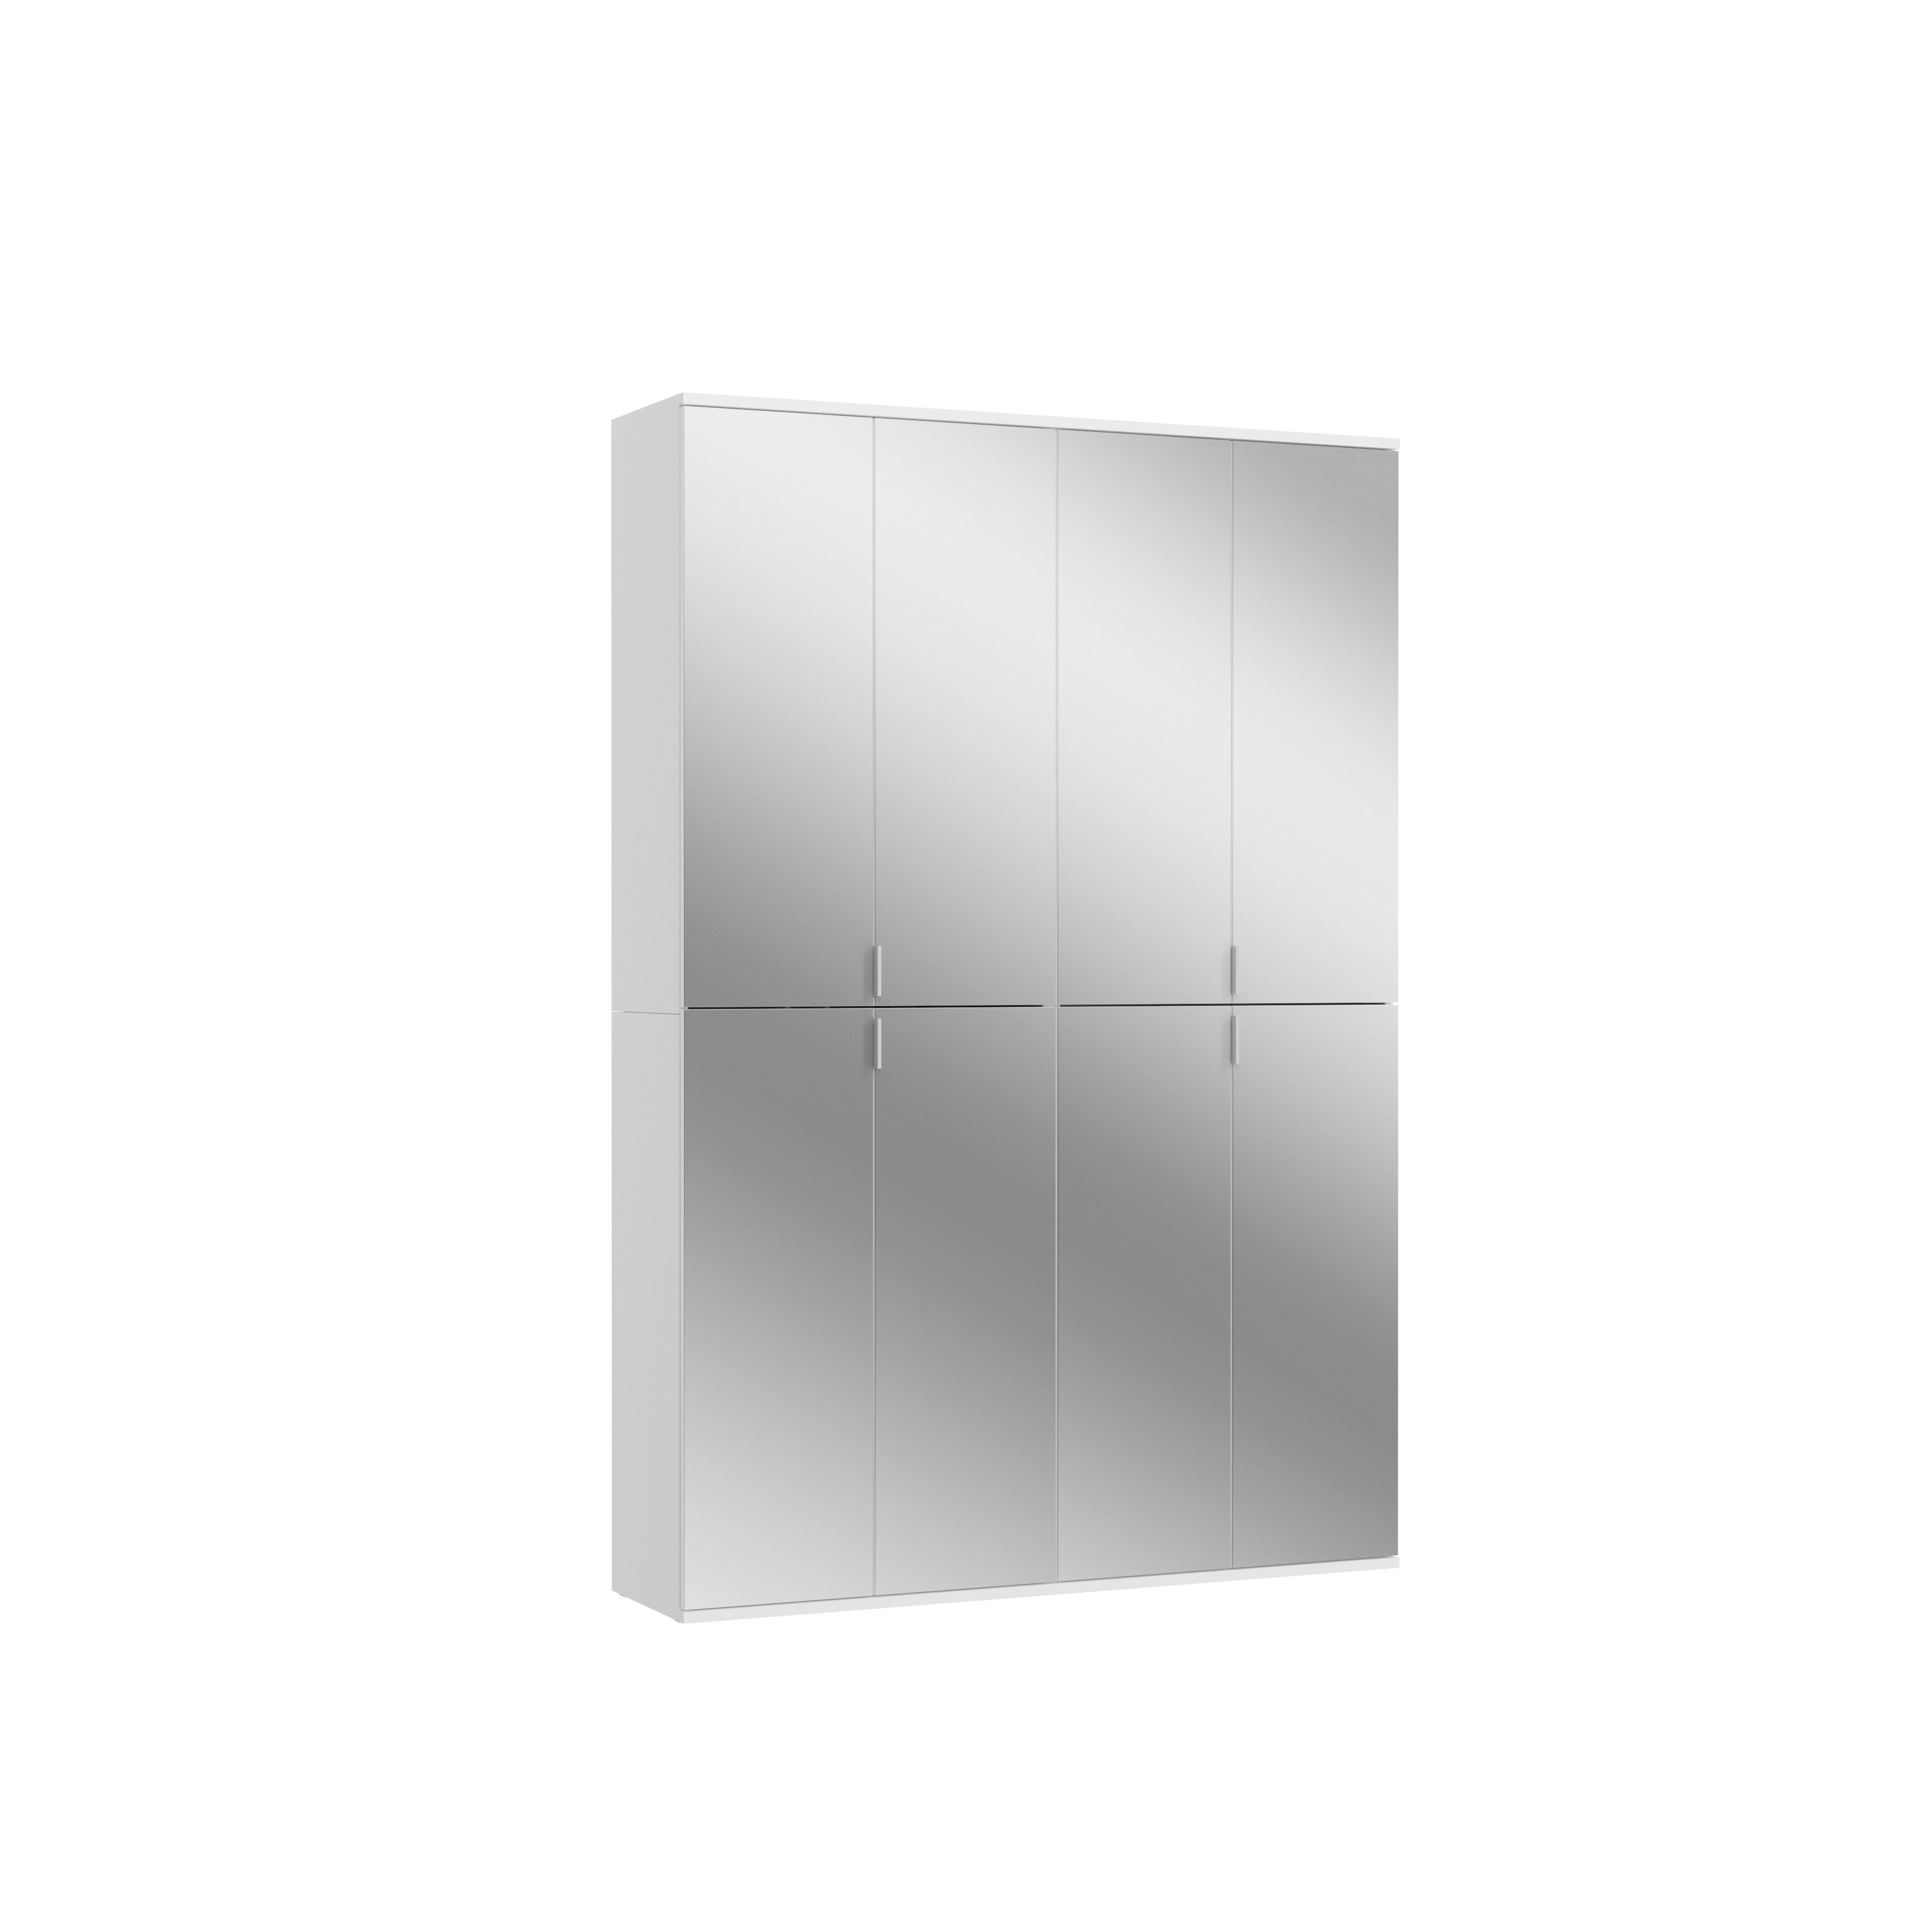 möbelando Garderobenschrank Paterson Eleganter Garderobenschrank aus Spanplatte in Weiß, mit 8 Spiegeltüren, 2 Kleiderstangen und 16 Ablageböden. Breite 130 cm, Höhe 193 cm, Tiefe 34 cm